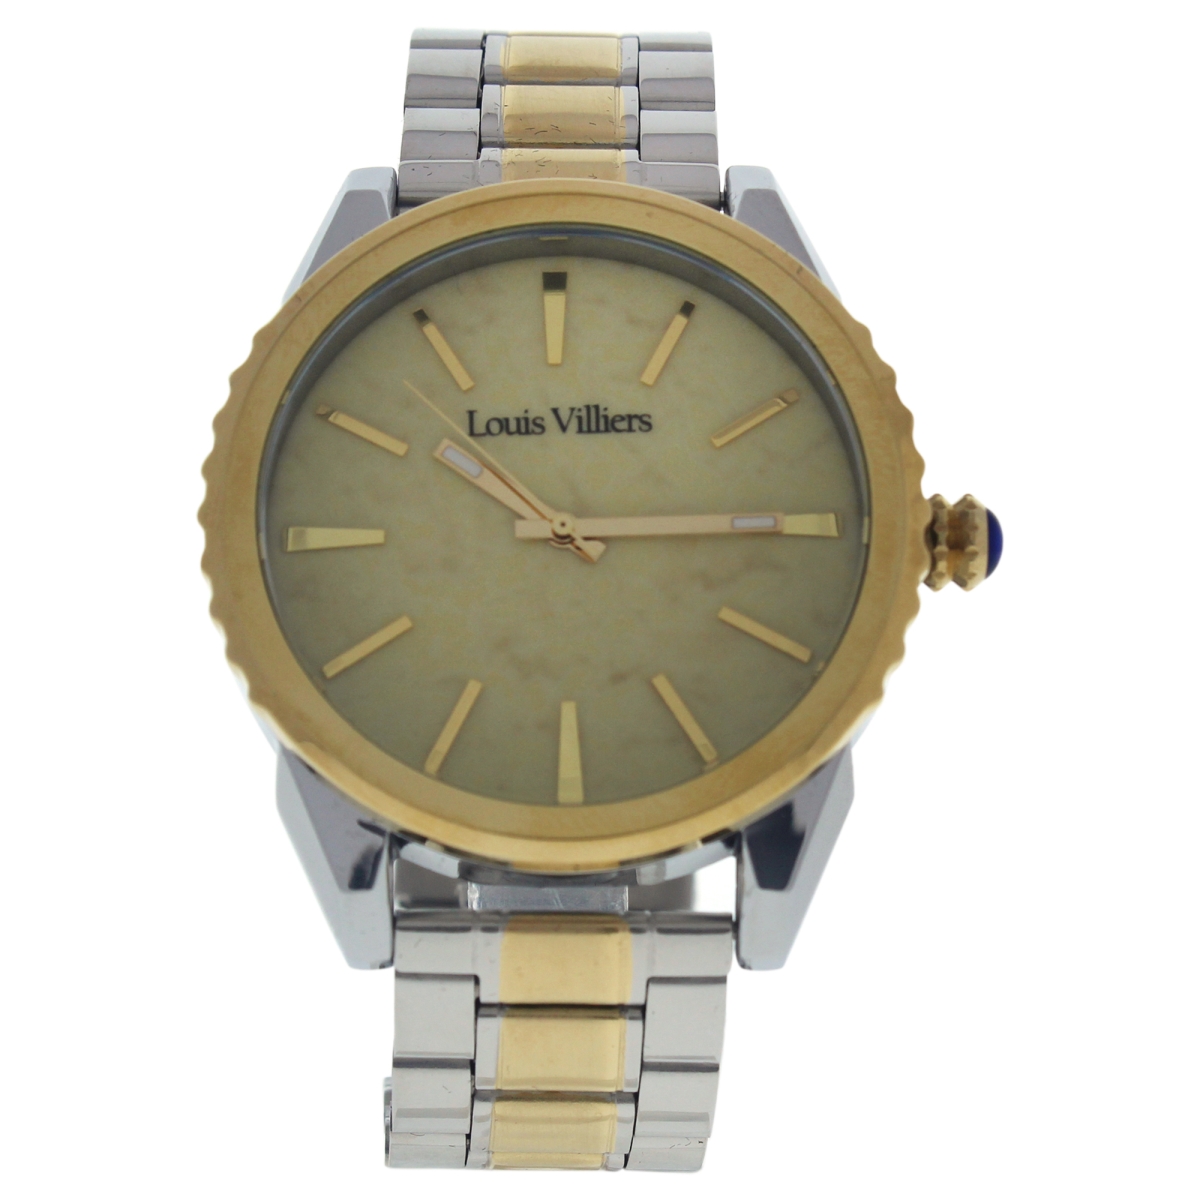 M-WAT-1307 LV2066 Stainless Steel Bracelet Watch for Men, Silver Gold -  Louis Villiers